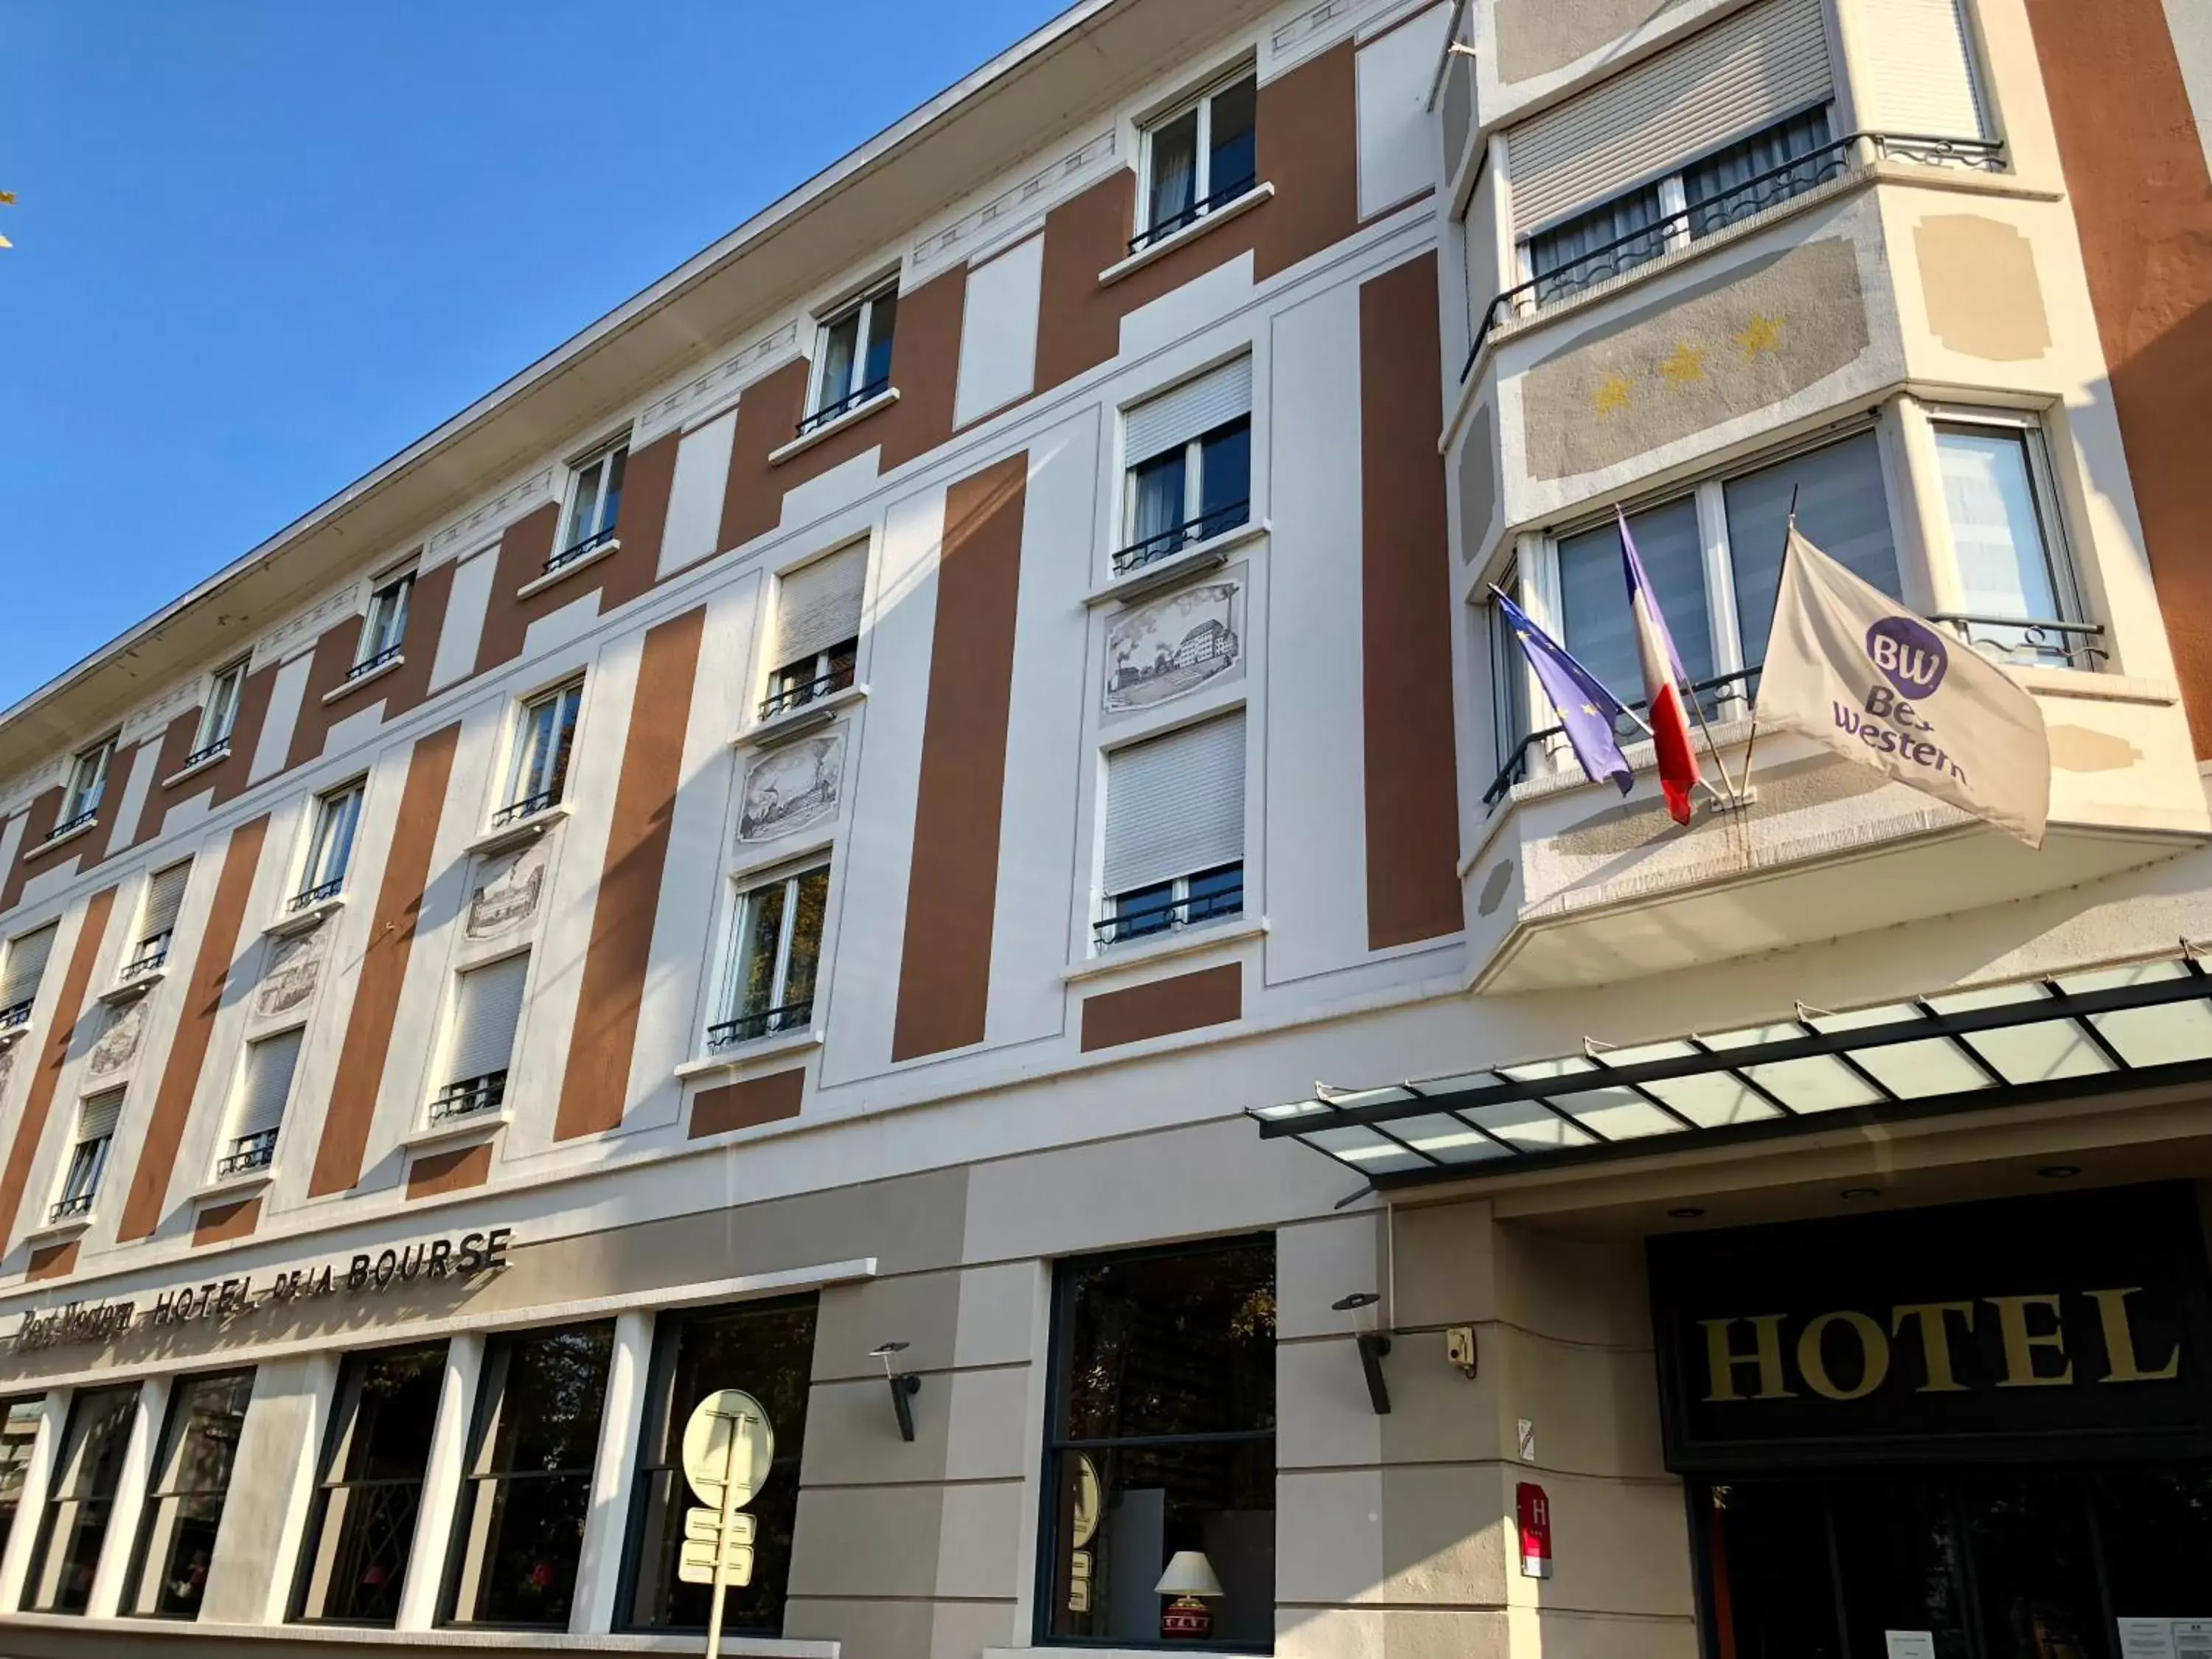 Facade/entrance, Property Building in Best Western Hôtel De La Bourse